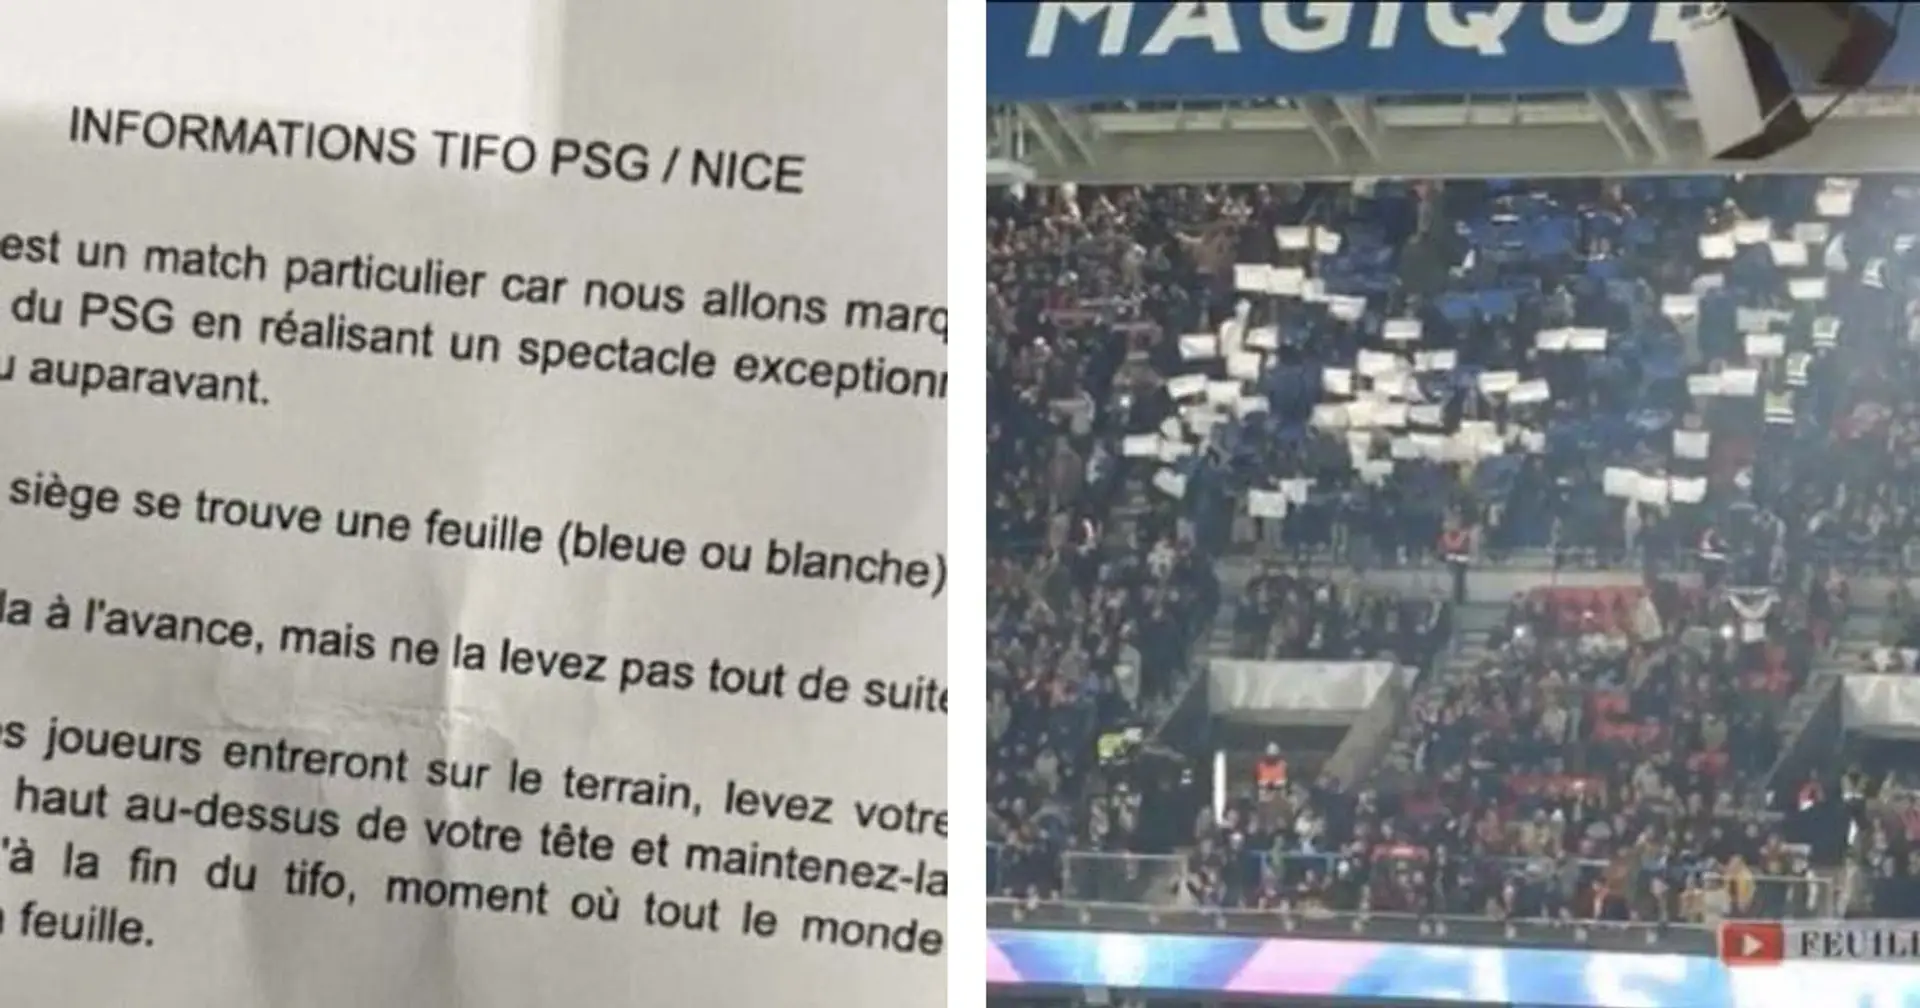 Des fans du PSG trompés grossièrement ont déployé un tifo de l'OM face à Nice - Des fans de Marseille à la manoeuvre